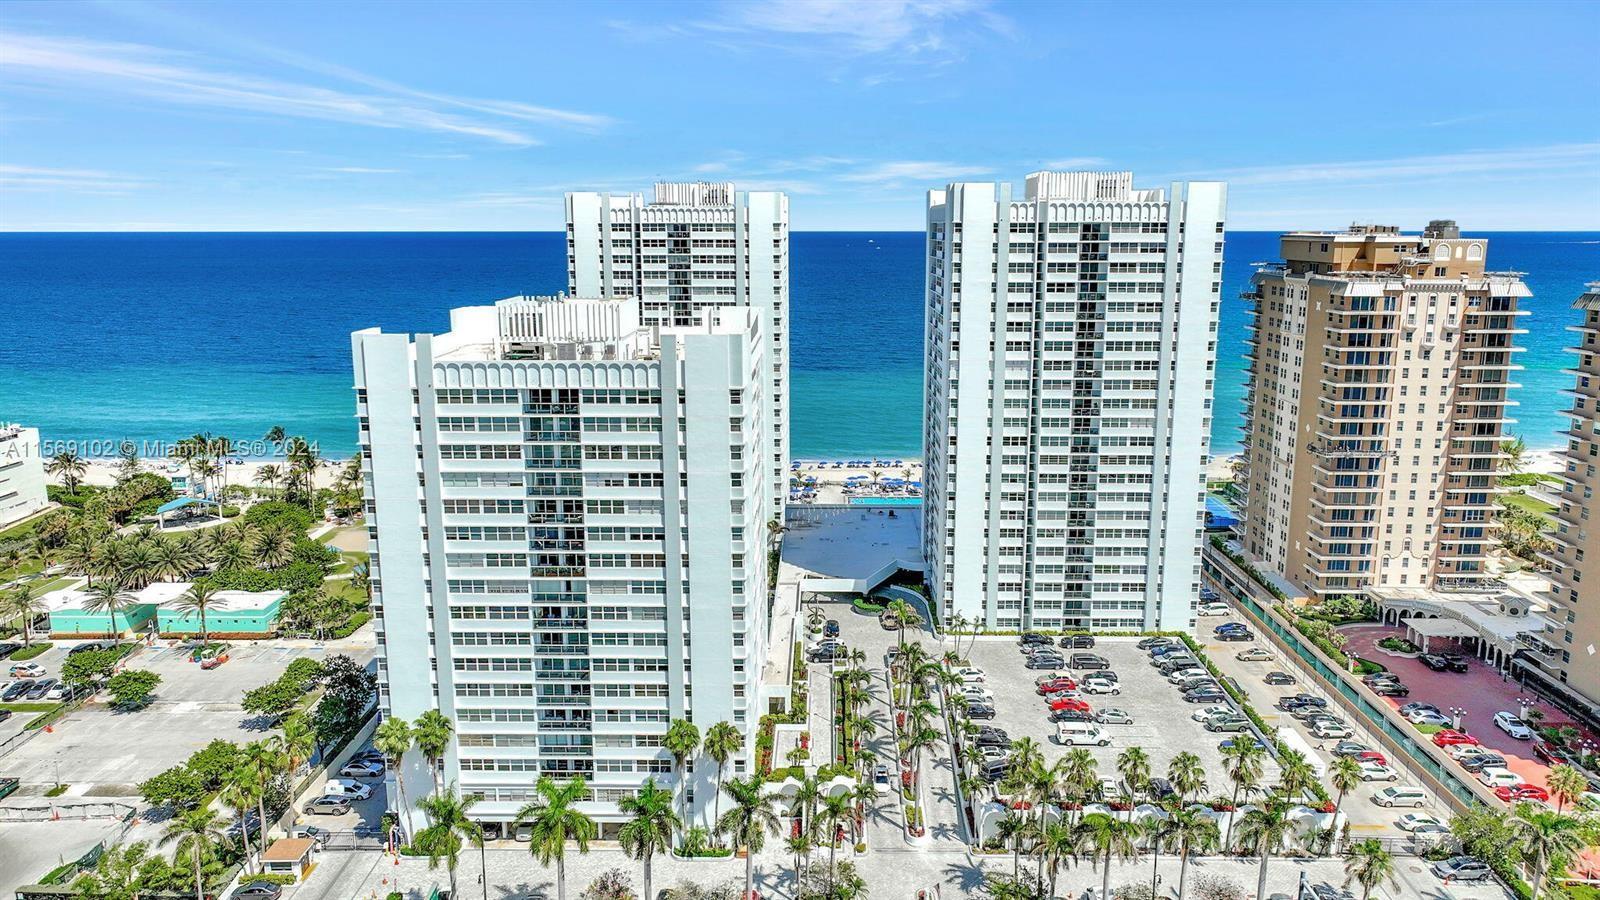 Condo for Rent in Hallandale Beach, FL